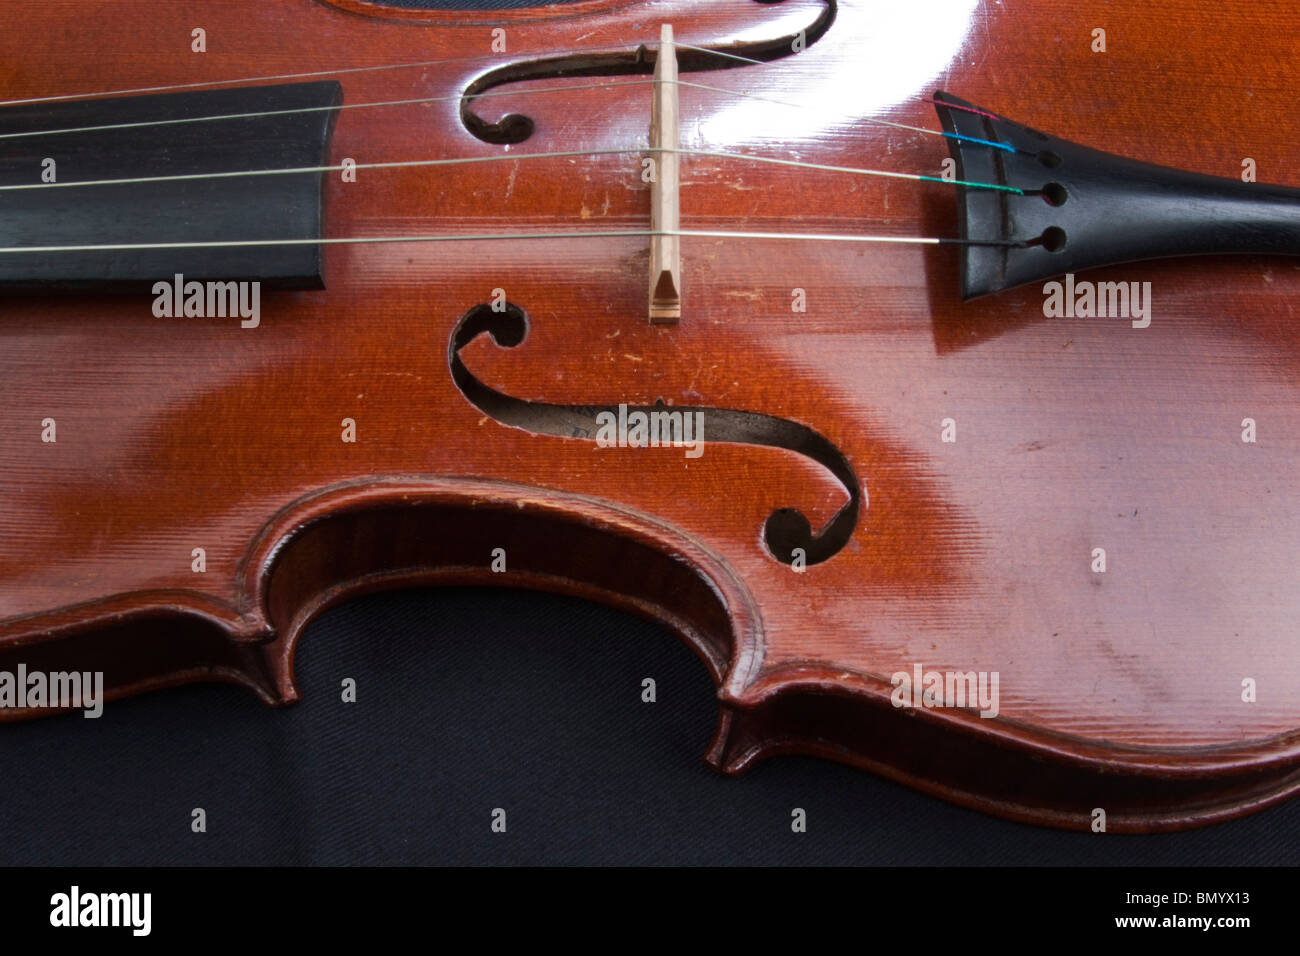 Un violon Stradivarius, et les détails de l'intérieur label Antonius Stradivarius Cremonensis. Cremona 104948 Horizontal Banque D'Images